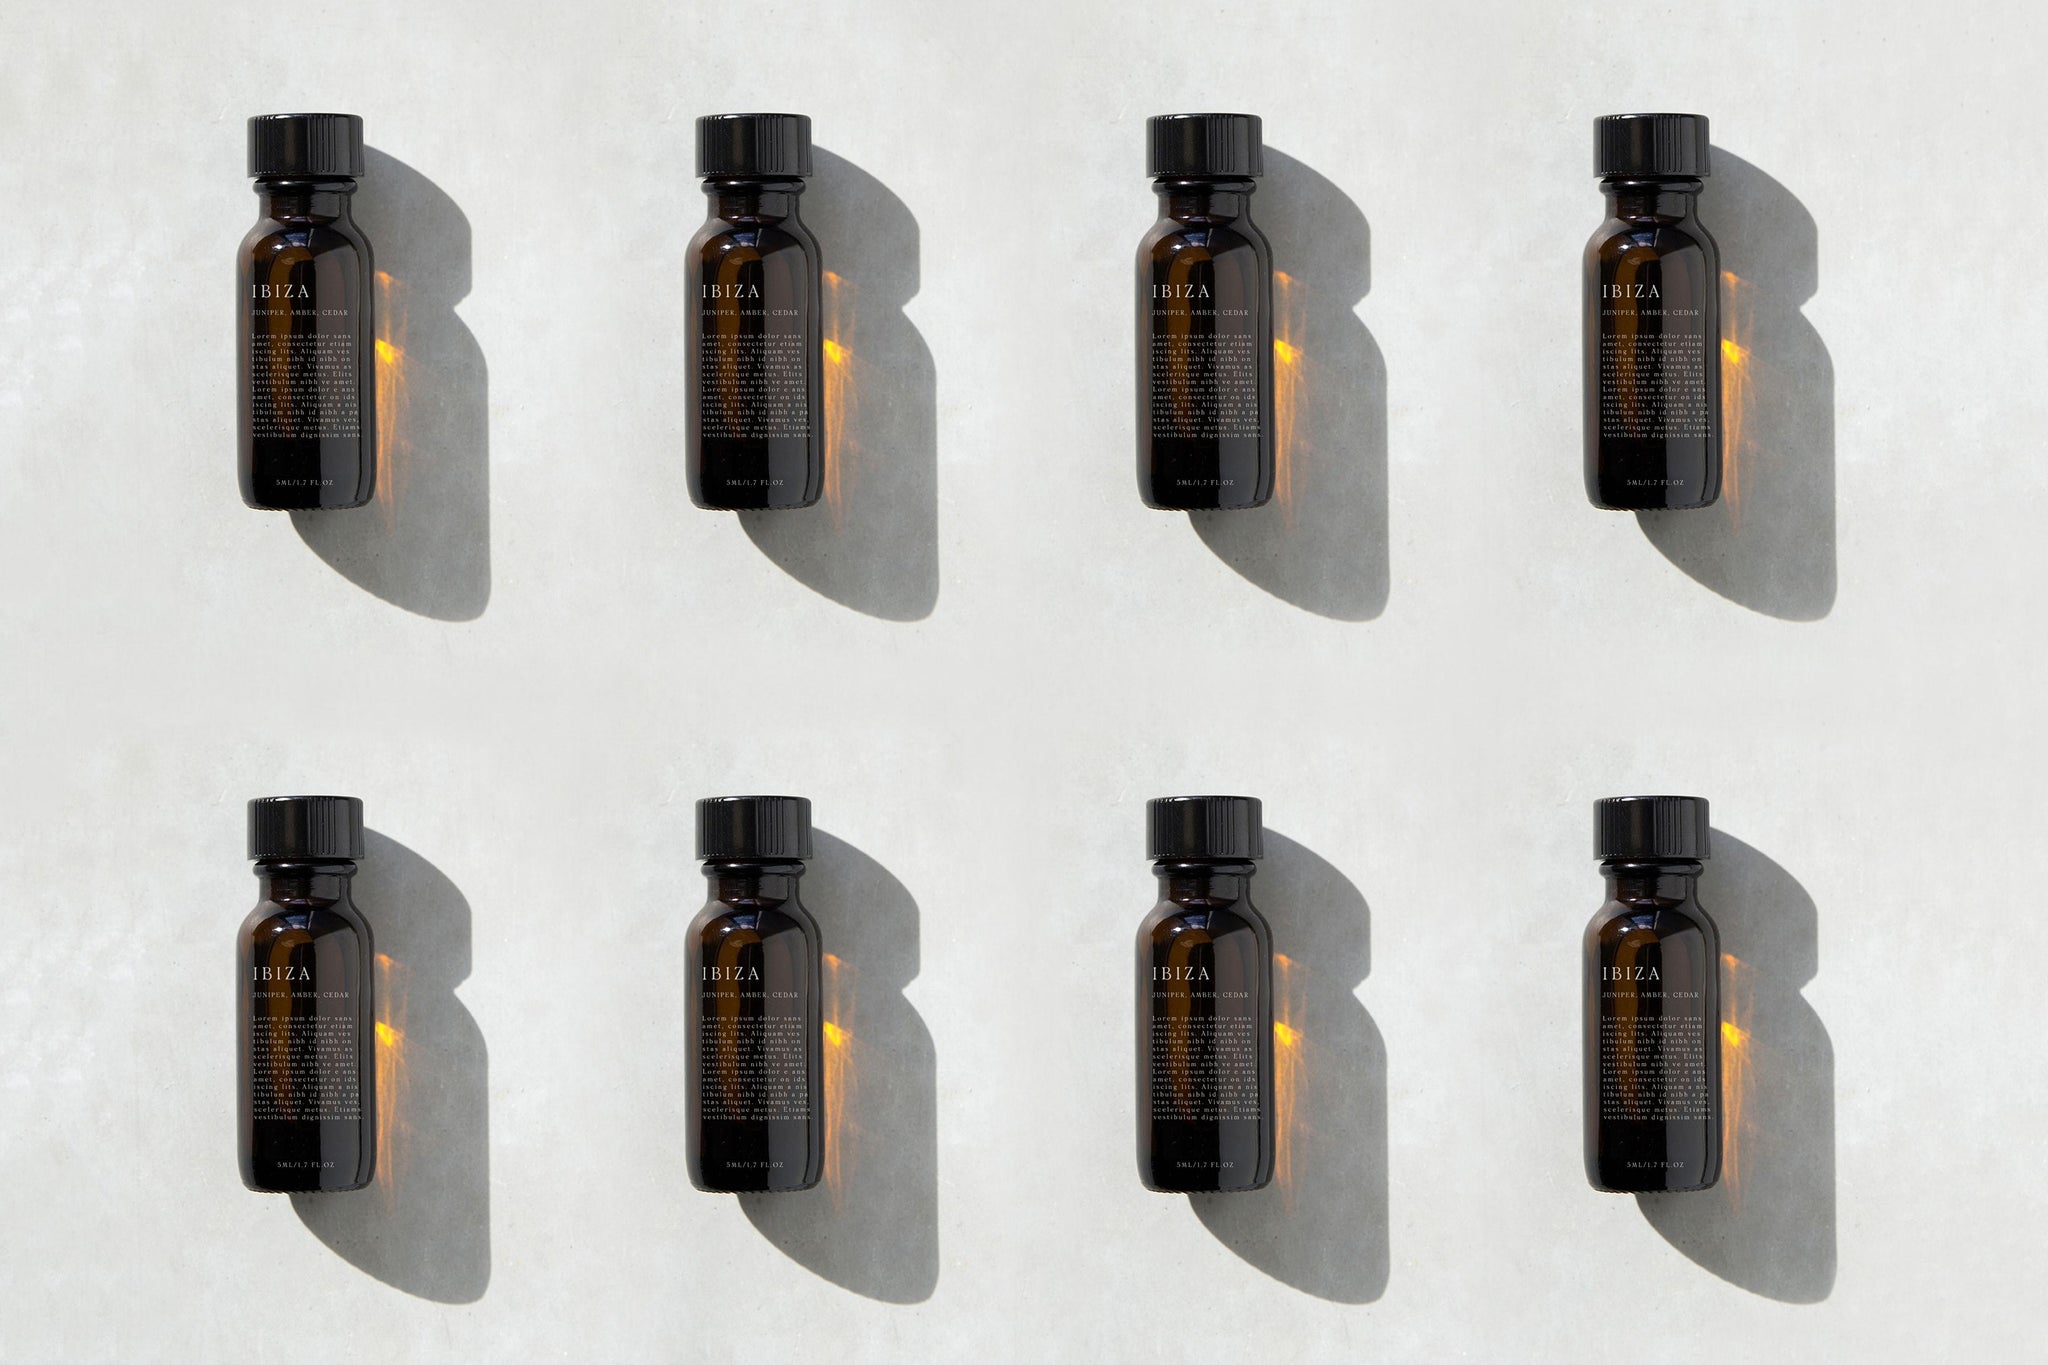 Amber essential oil bottle mockup - Smarty Mockups